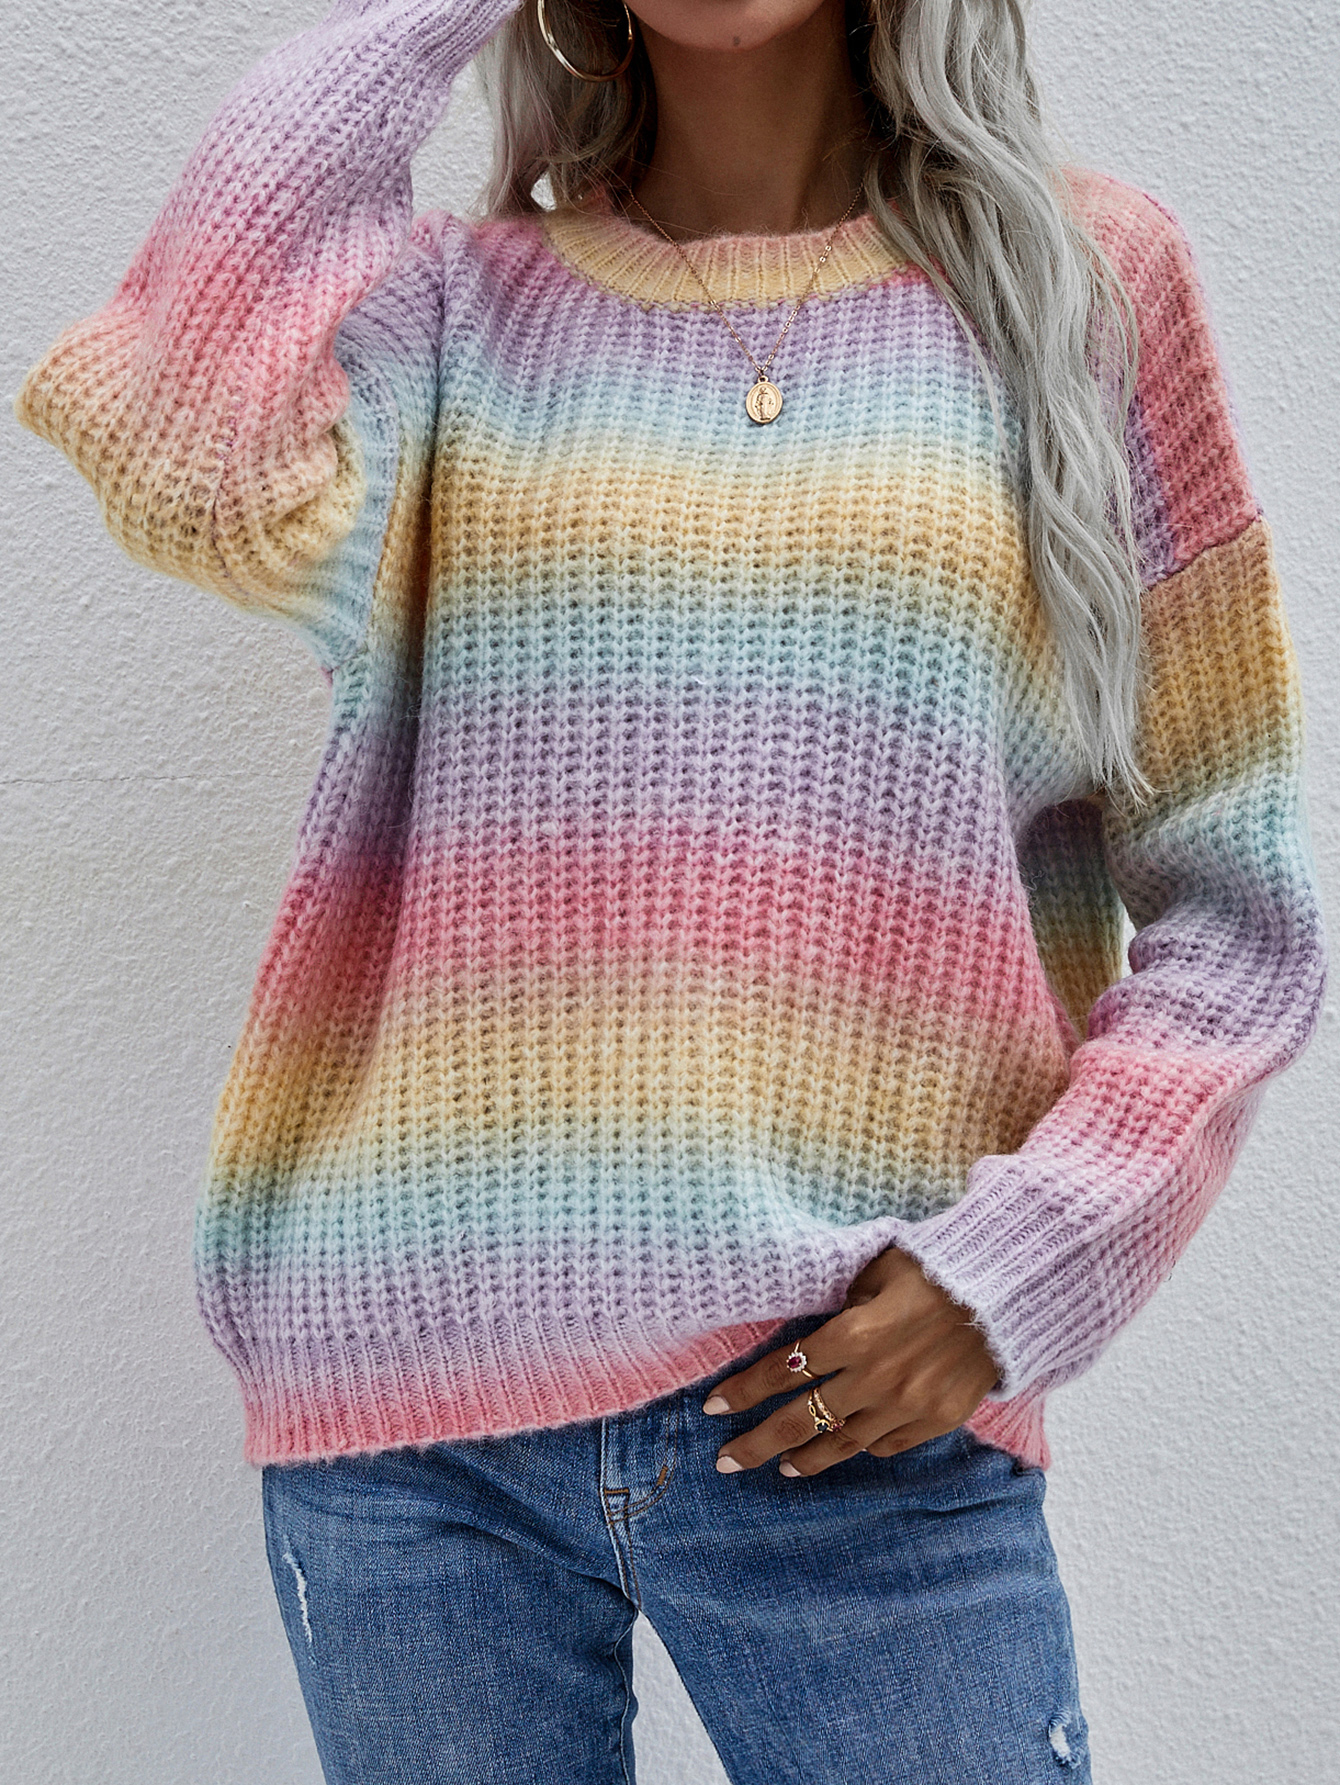 Женский свитер Повседневный пуловер с круглым вырезом и длинными рукавами. Большой сшитый свитер со свободным вязаным крючком полосатым воротником, свитера цвета радуги.